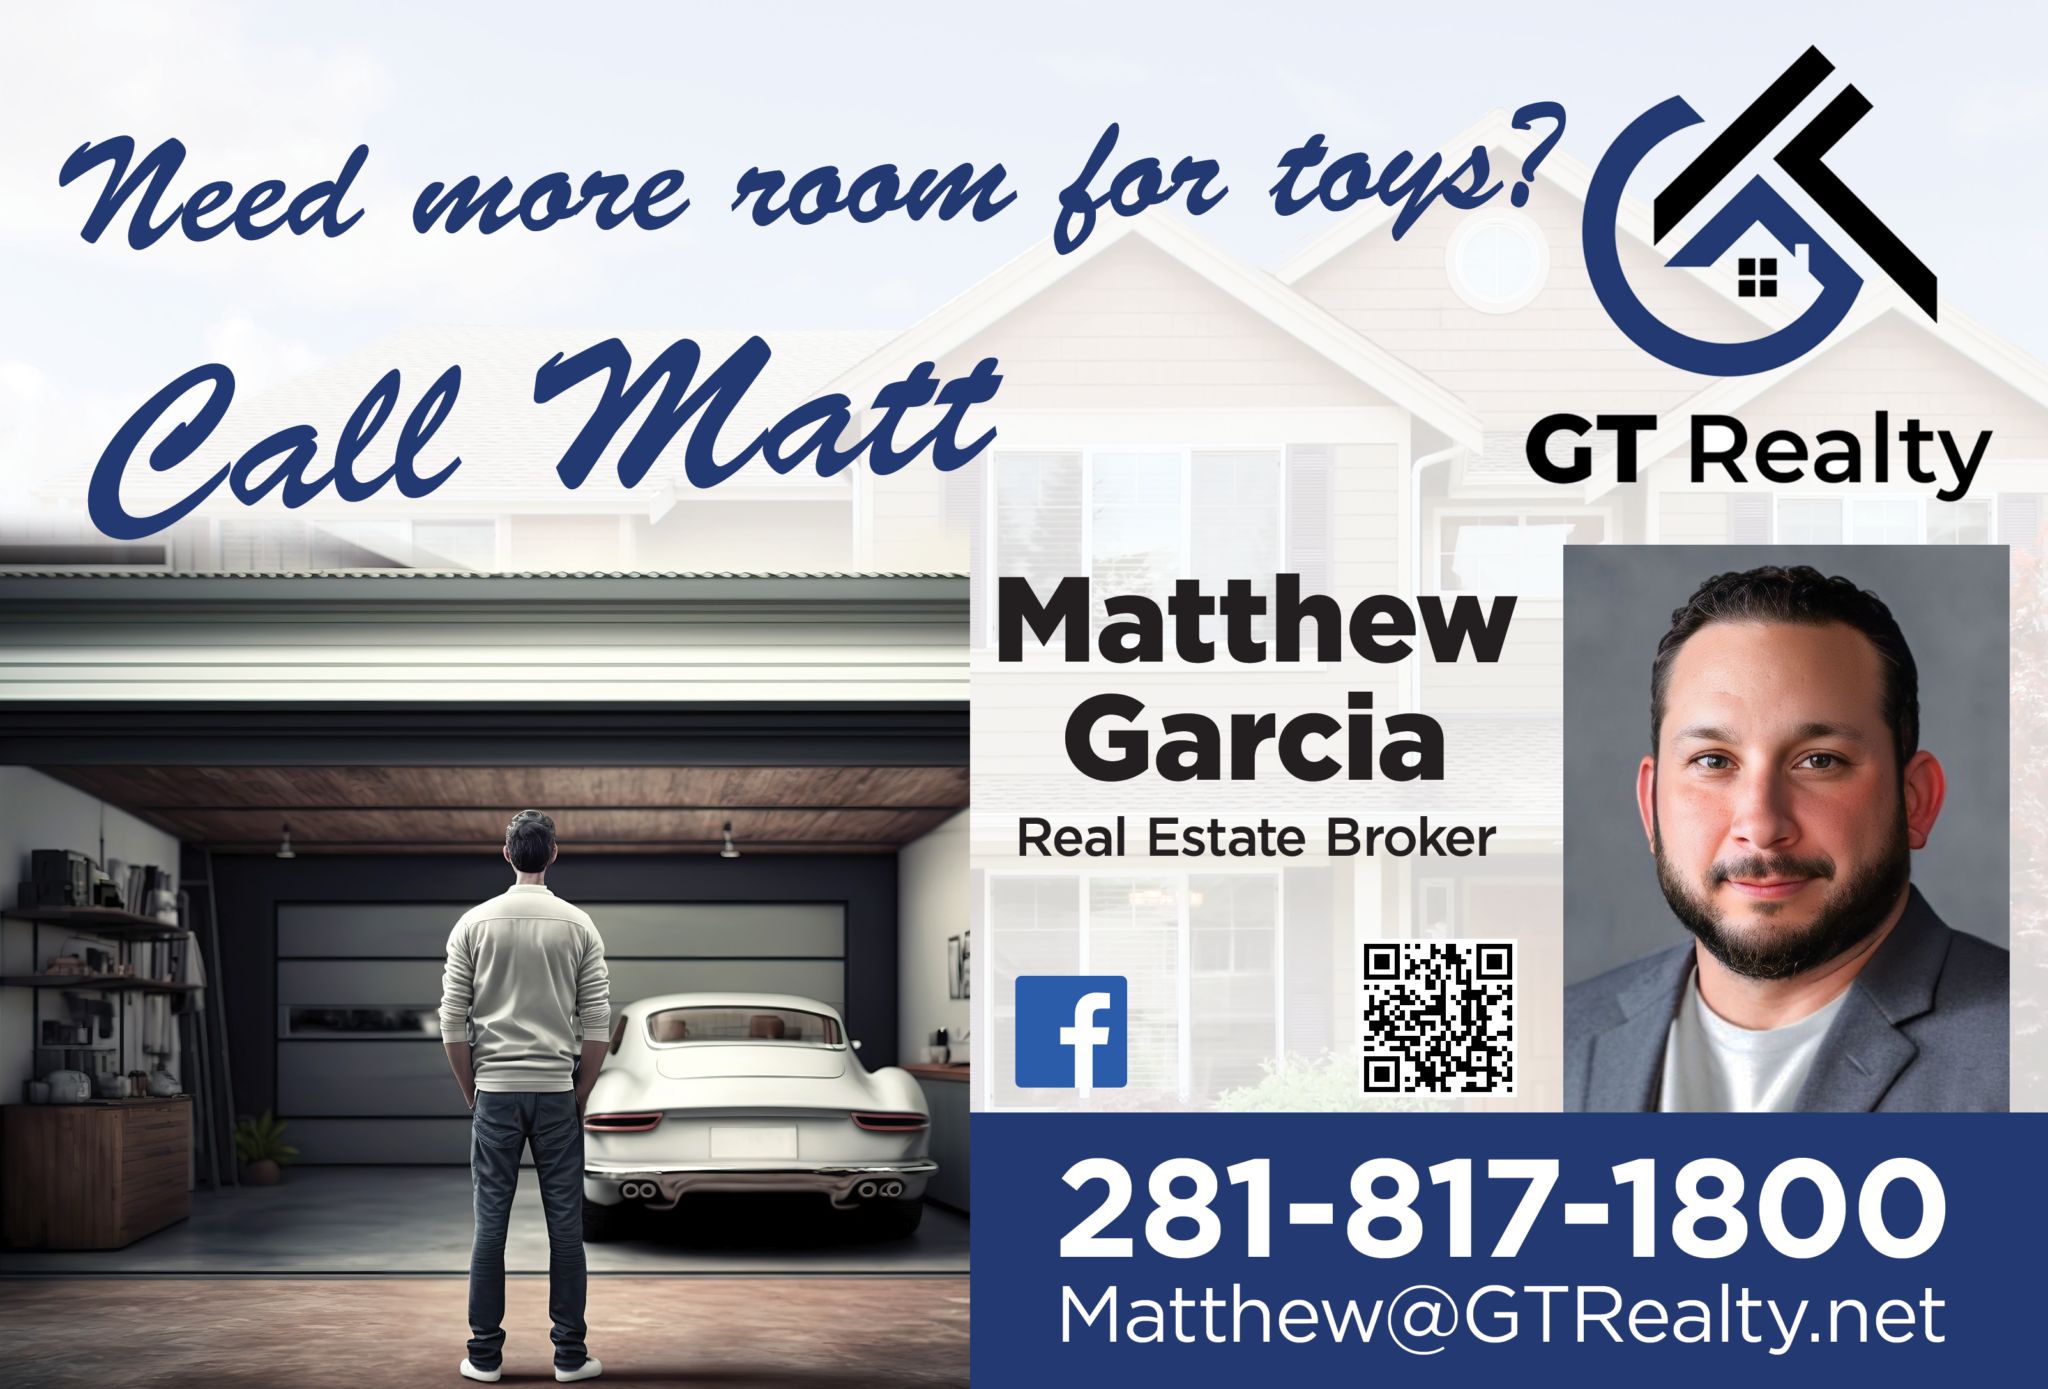 GT Realty, Matthew Garcia: 281-817-1800